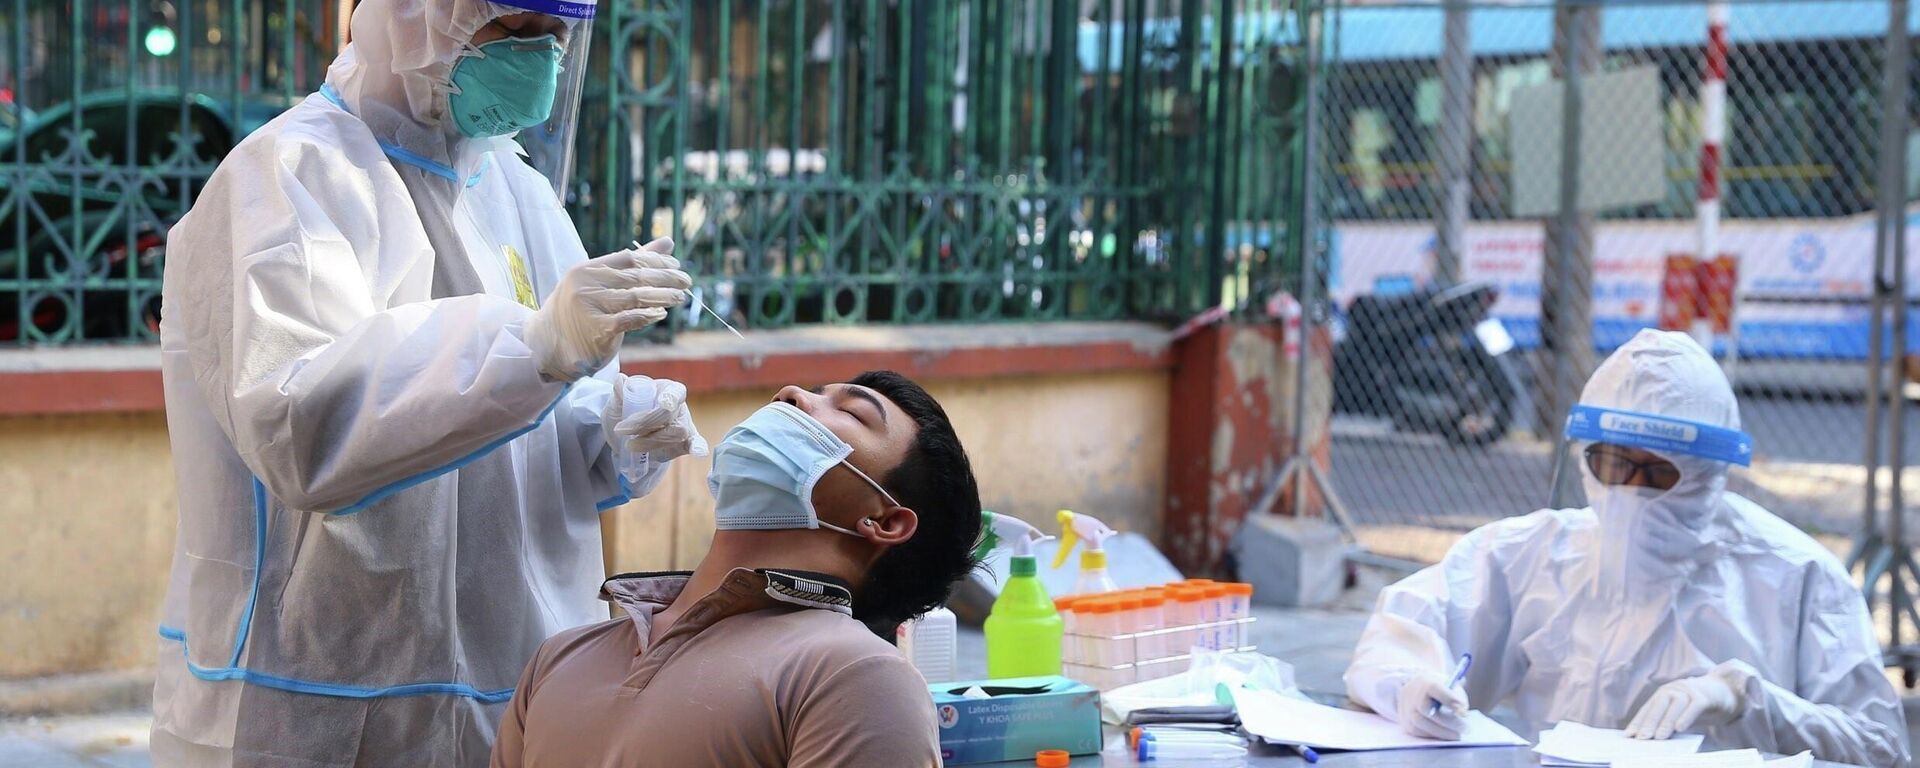 Nhân viên y tế lấy mẫu xét nghiệm sàng lọc COVID-19 cho người dân trong khu vực bị phong tỏa thuộc phường Nguyễn Du (Hà Nội) - Sputnik Việt Nam, 1920, 01.01.2022